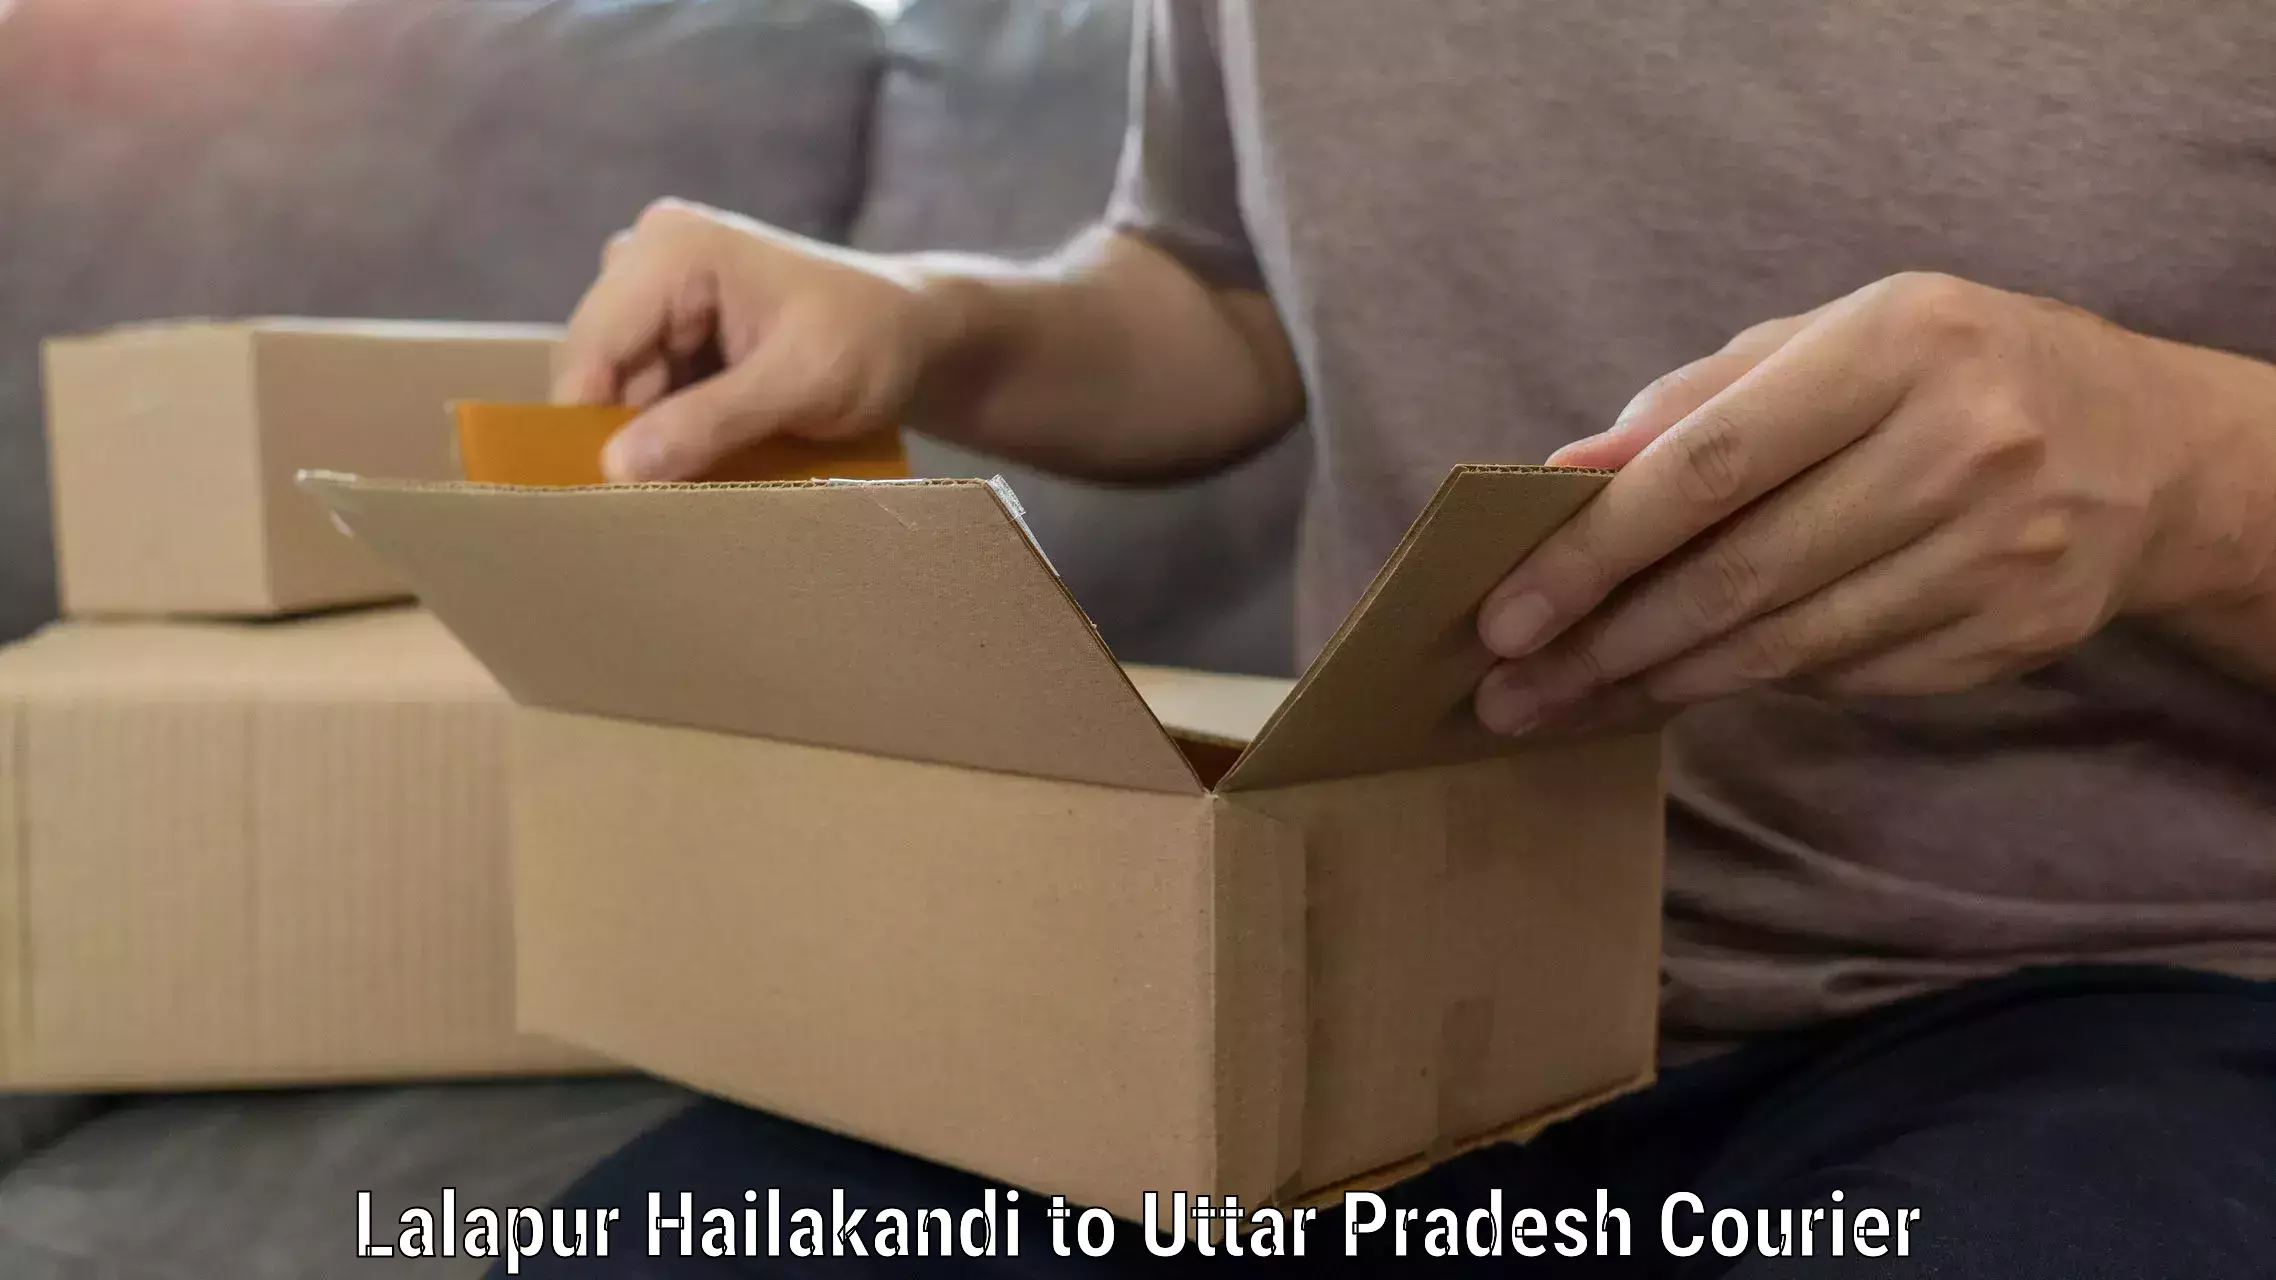 Furniture movers and packers Lalapur Hailakandi to Uttar Pradesh